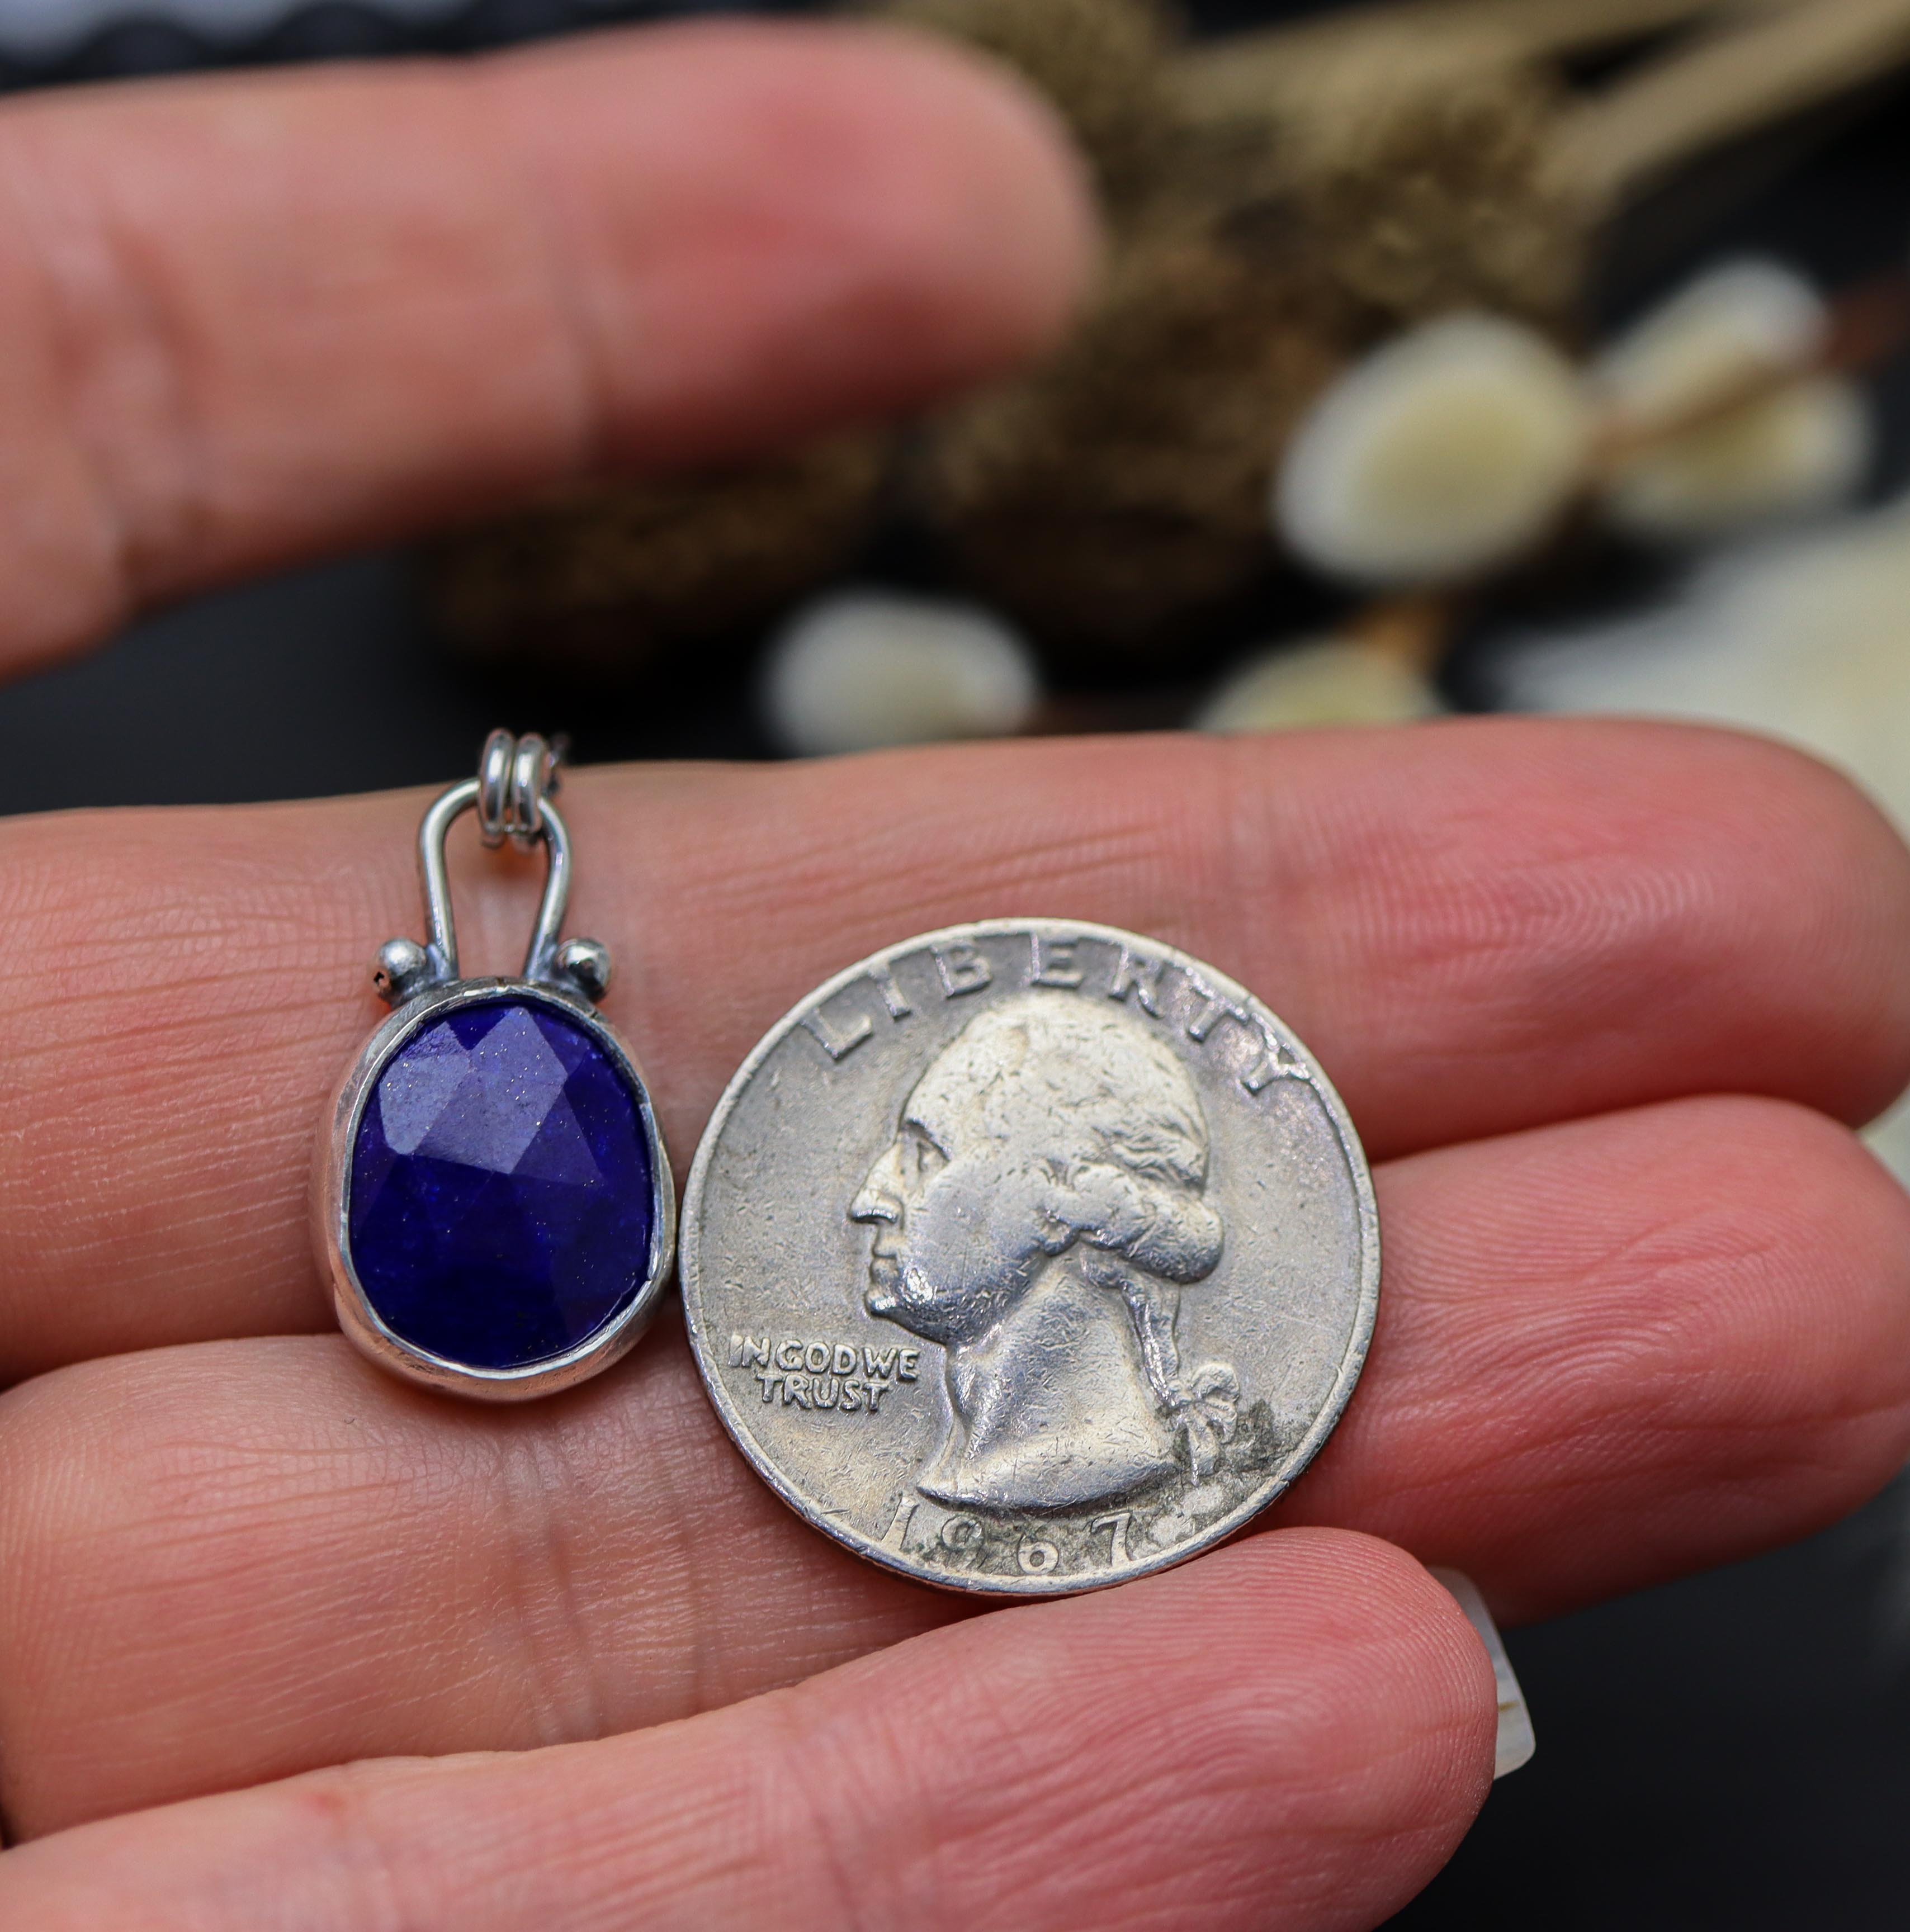 Blue Lapis Pendant Necklace Sterling Silver